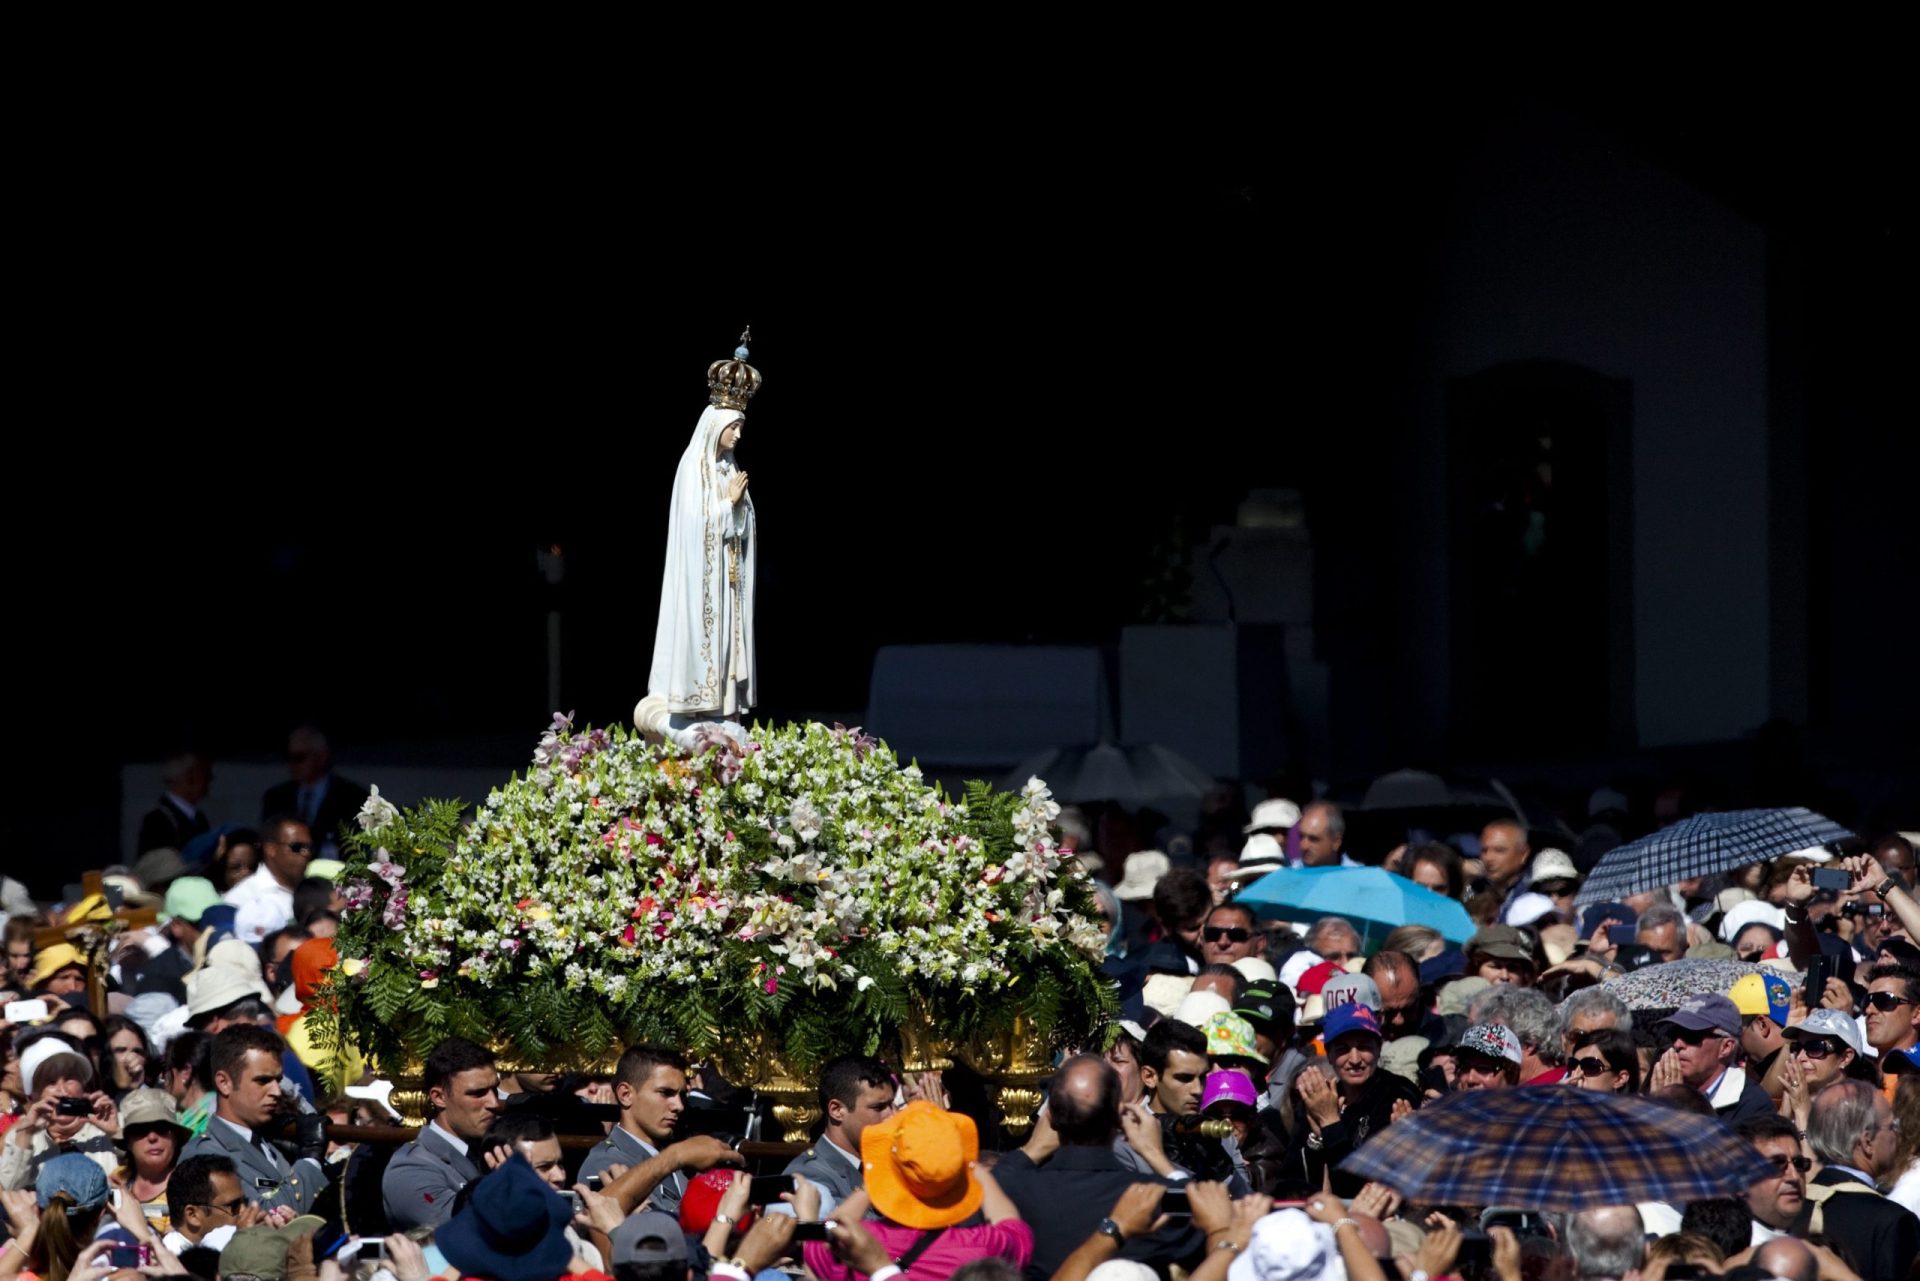 Milhares de peregrinos esperados hoje no santuário de Fátima